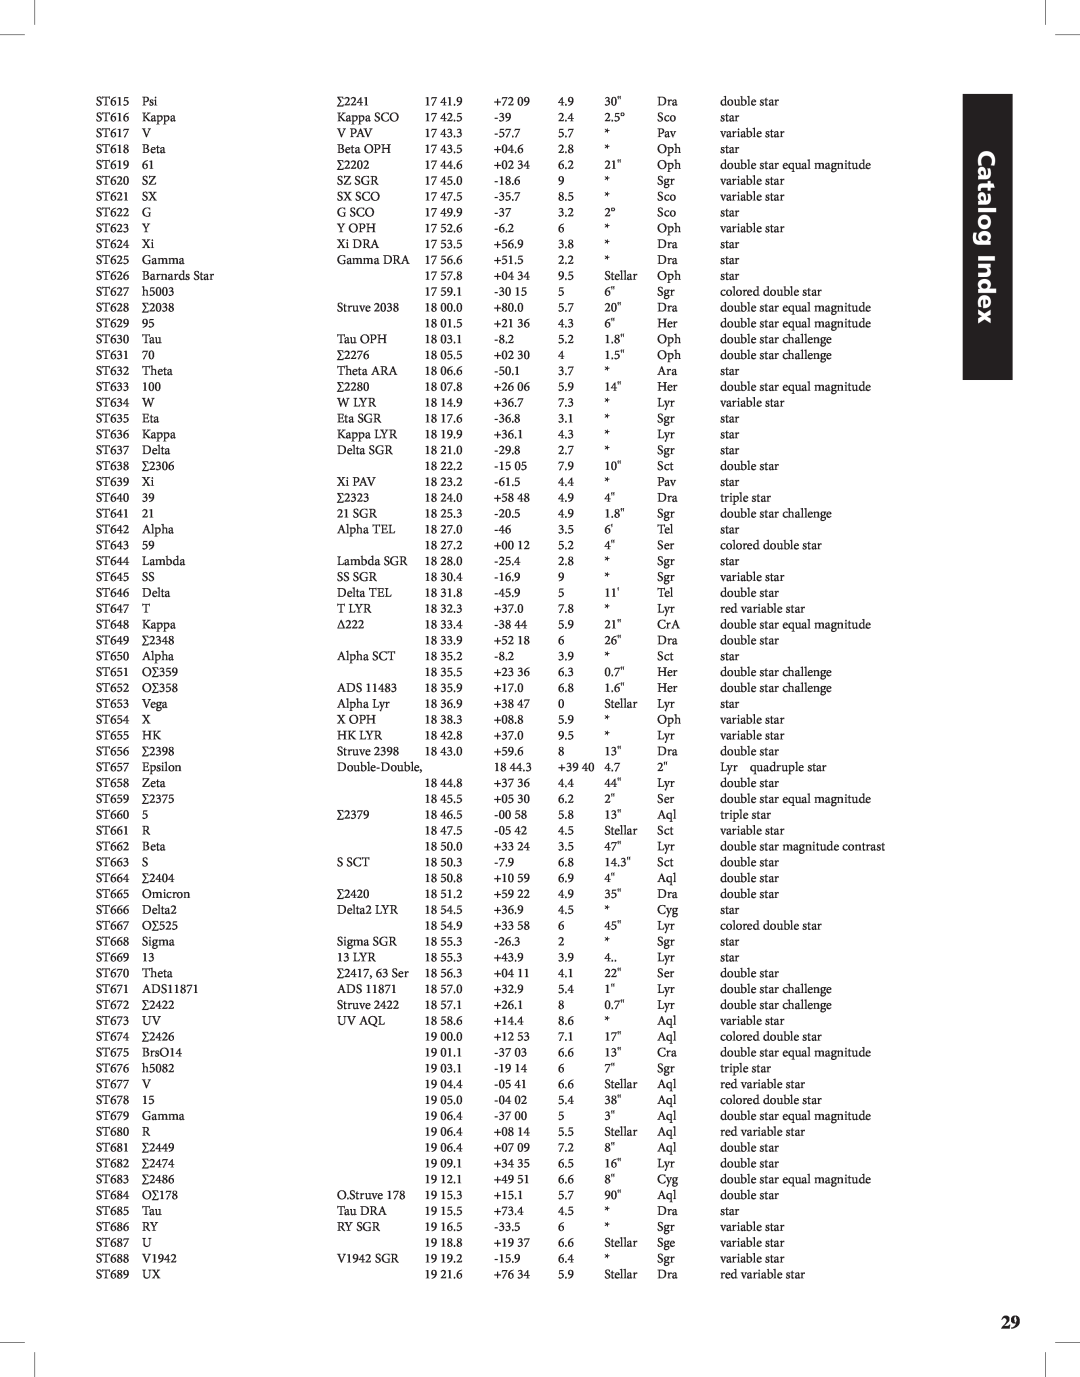 Bushnell Discoverer instruction manual Catalog Index, ST615 